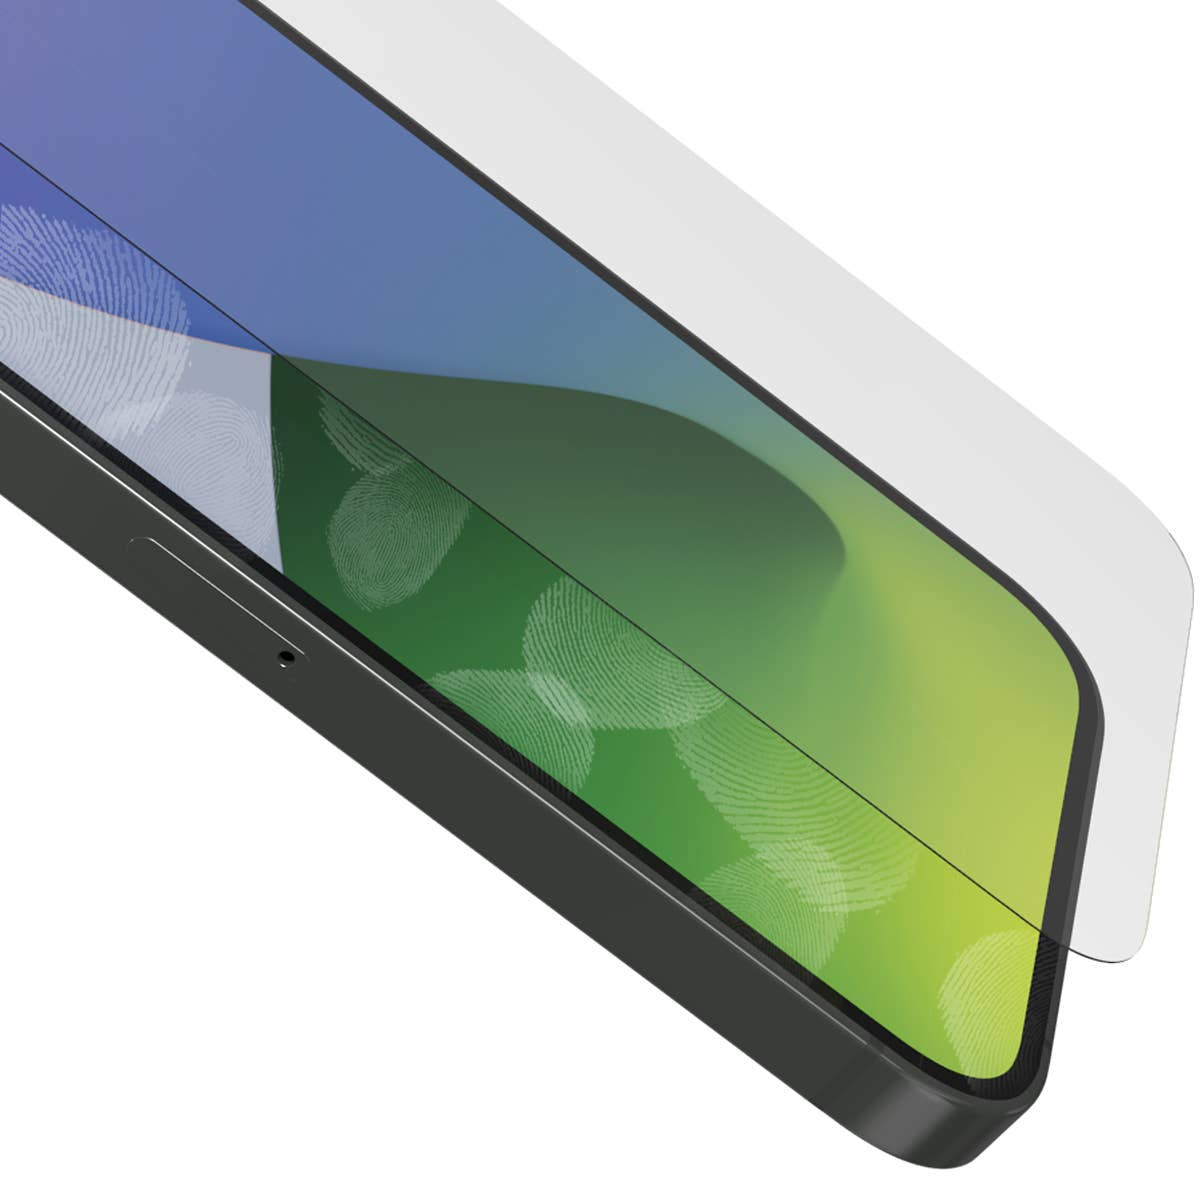 ZAGG InvisibleShield GlassElite+ Screen Protector for iPhone 12 Pro Max